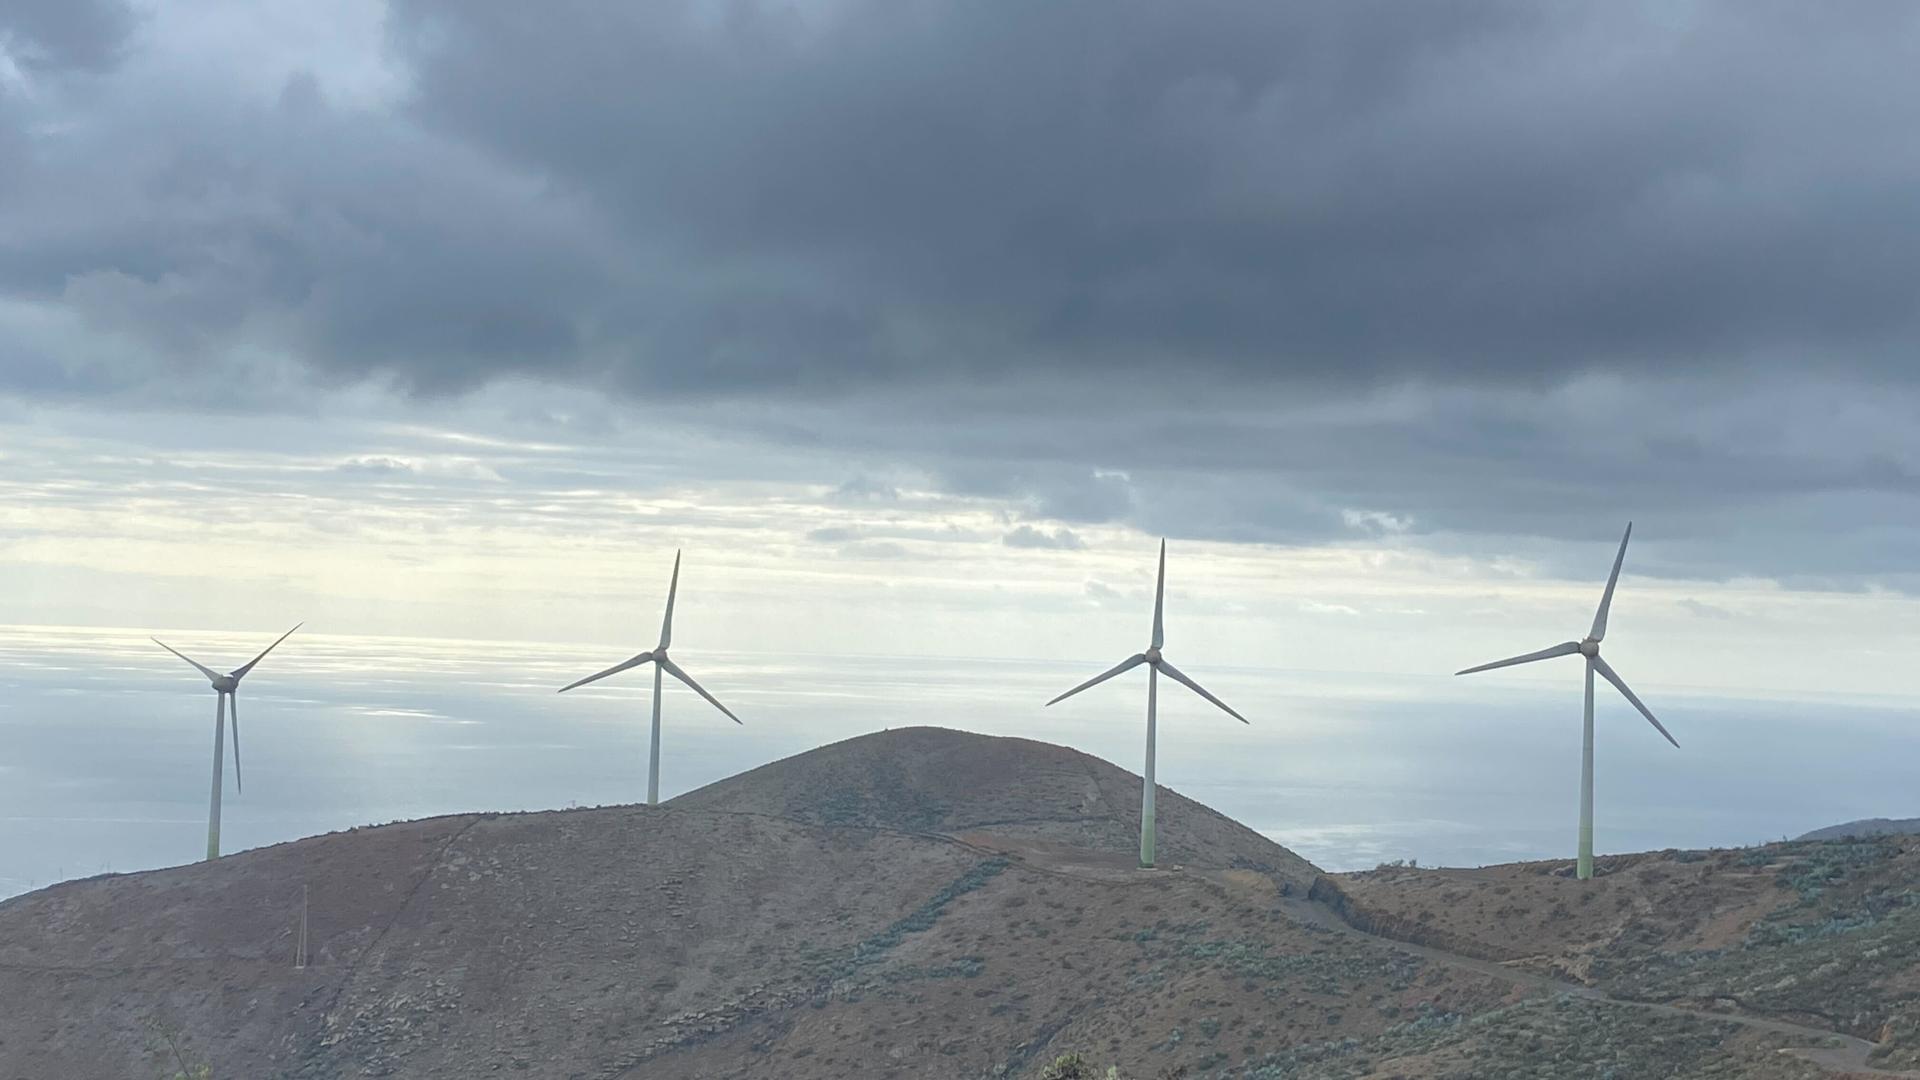 Four land-based wind turbines